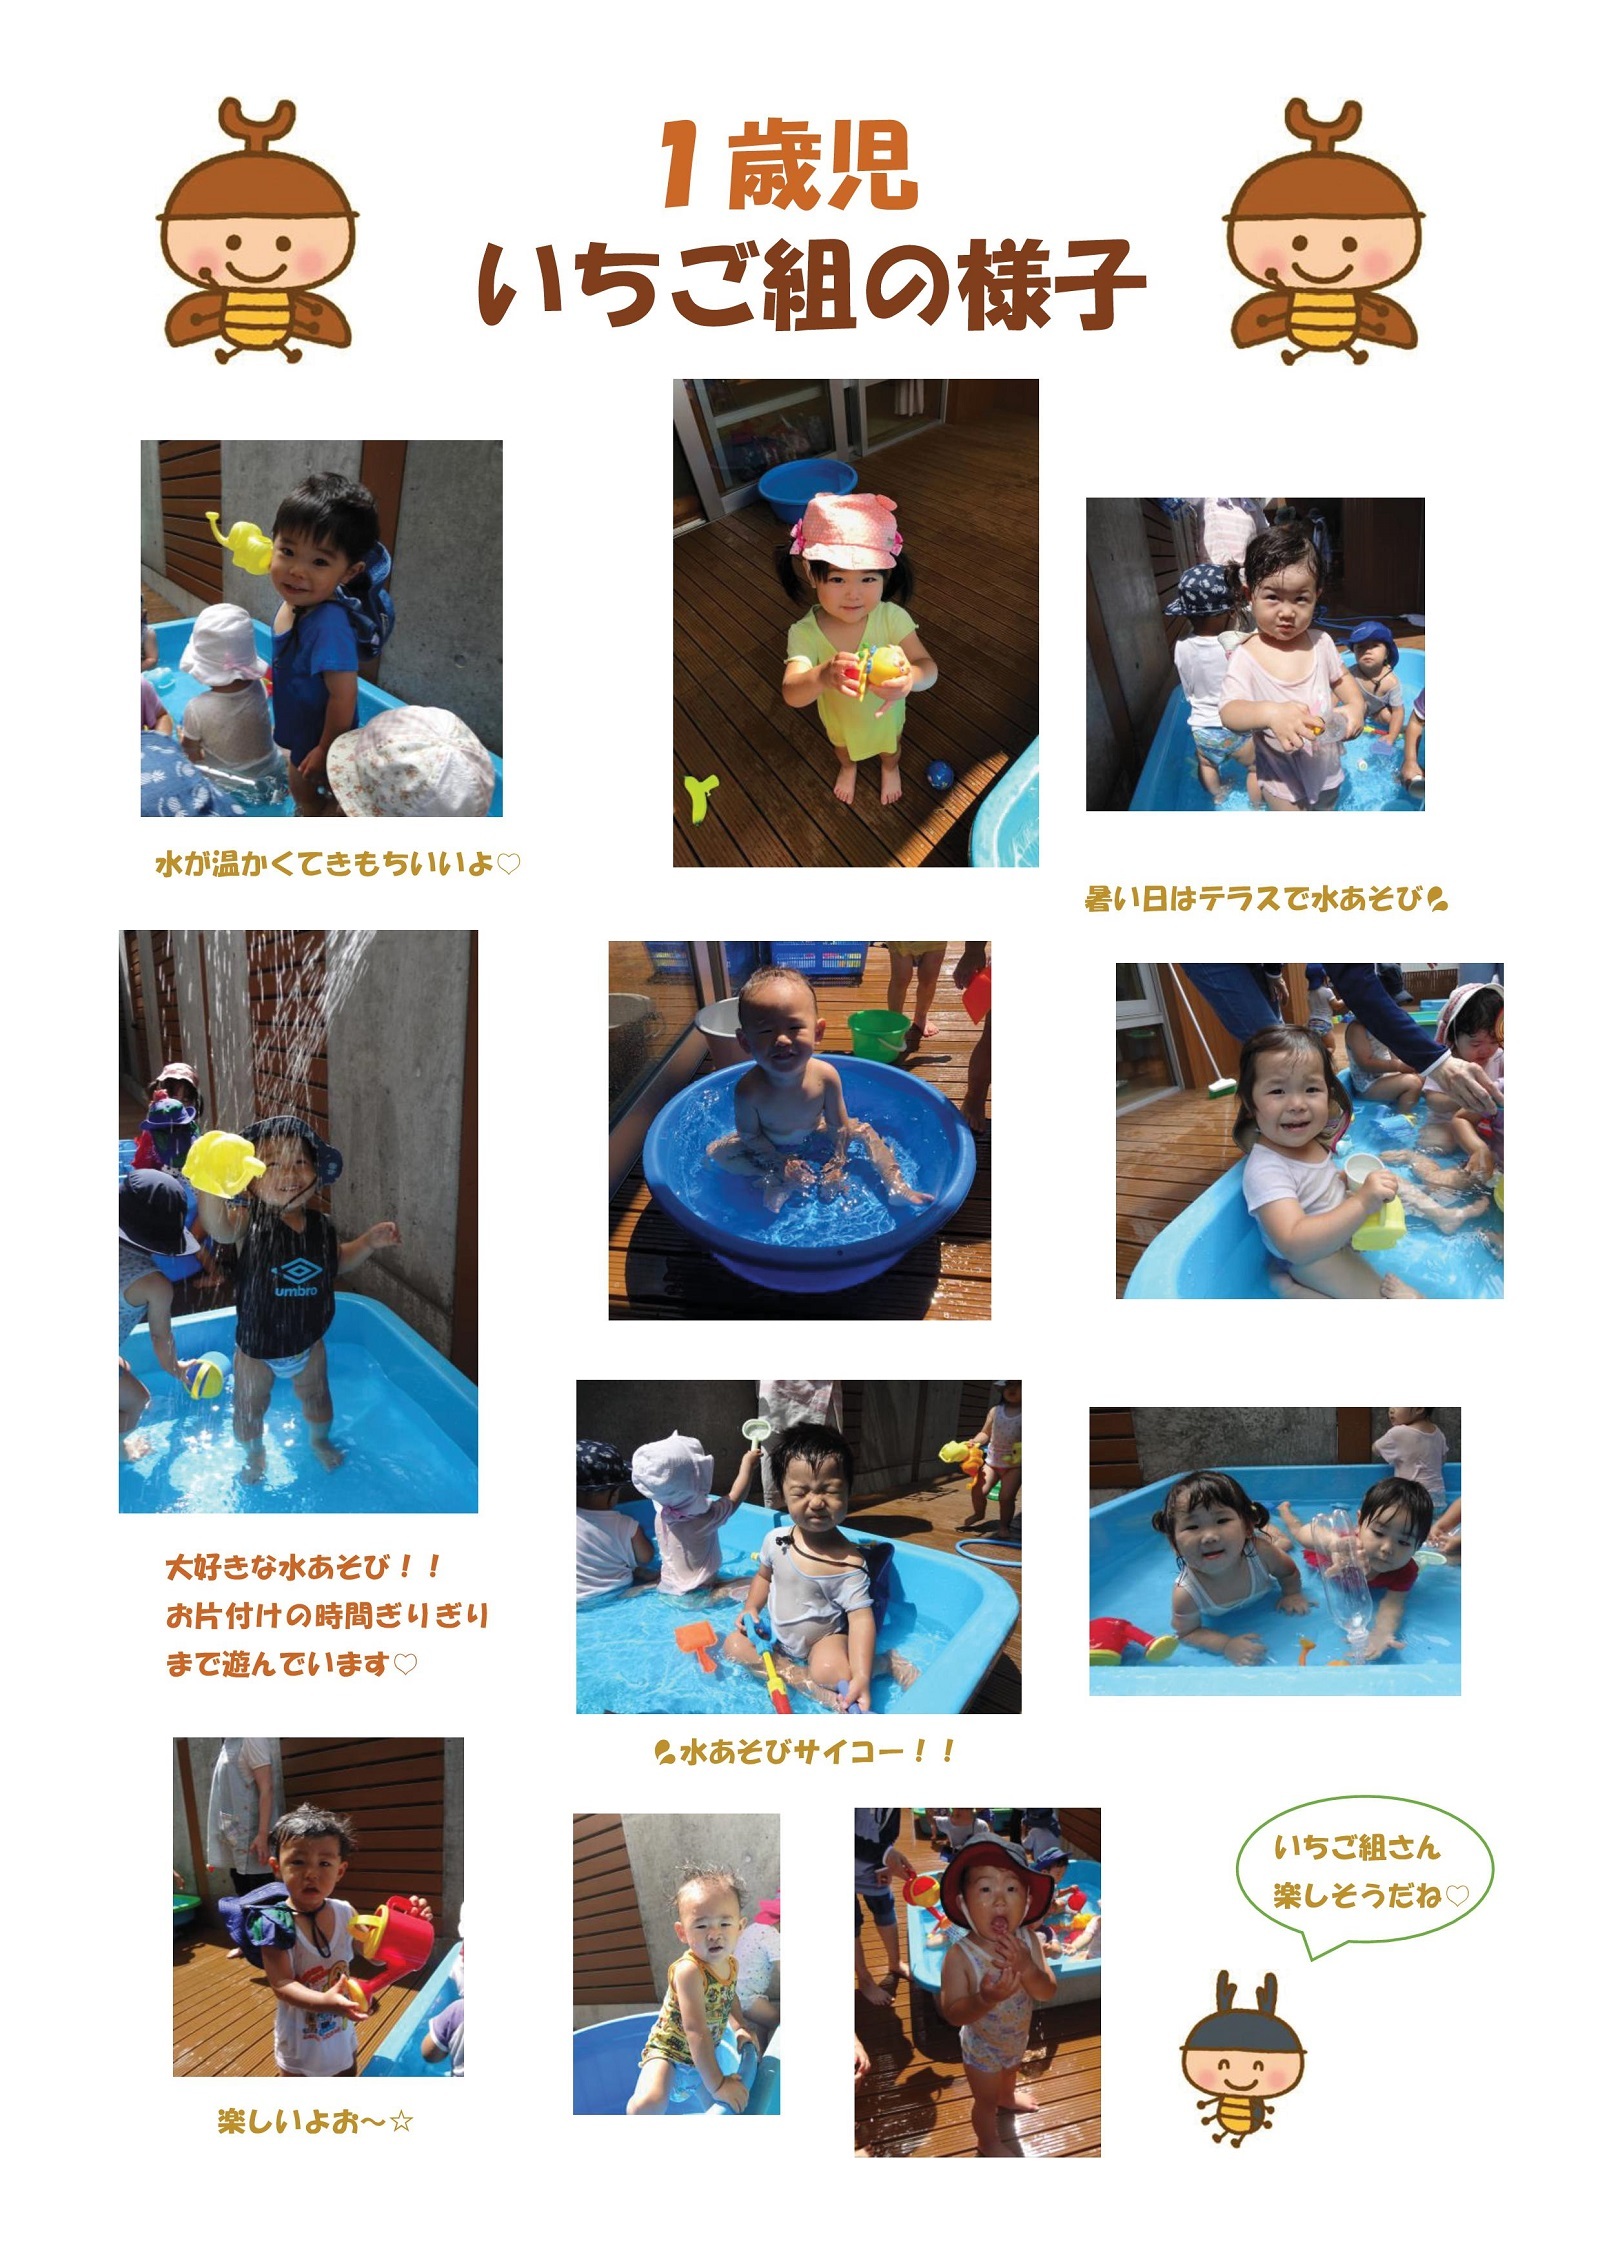 虹いろ保育所通信(1歳児いちご組の様子・令和2年夏)の画像